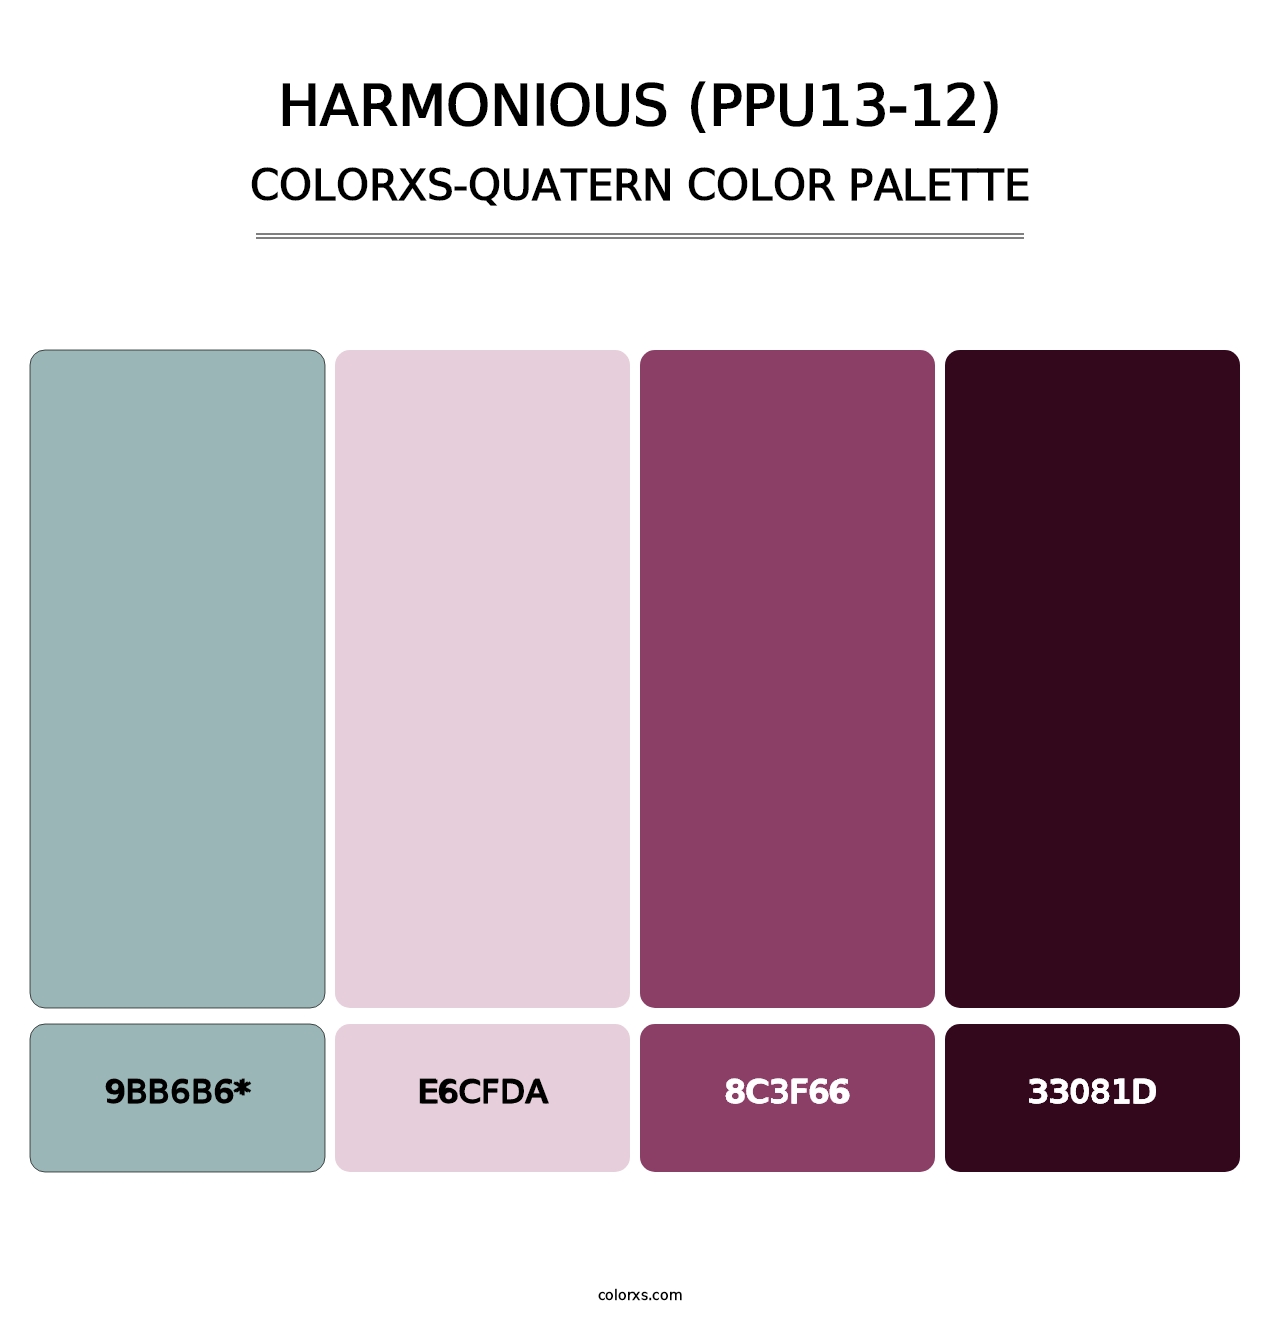 Harmonious (PPU13-12) - Colorxs Quatern Palette